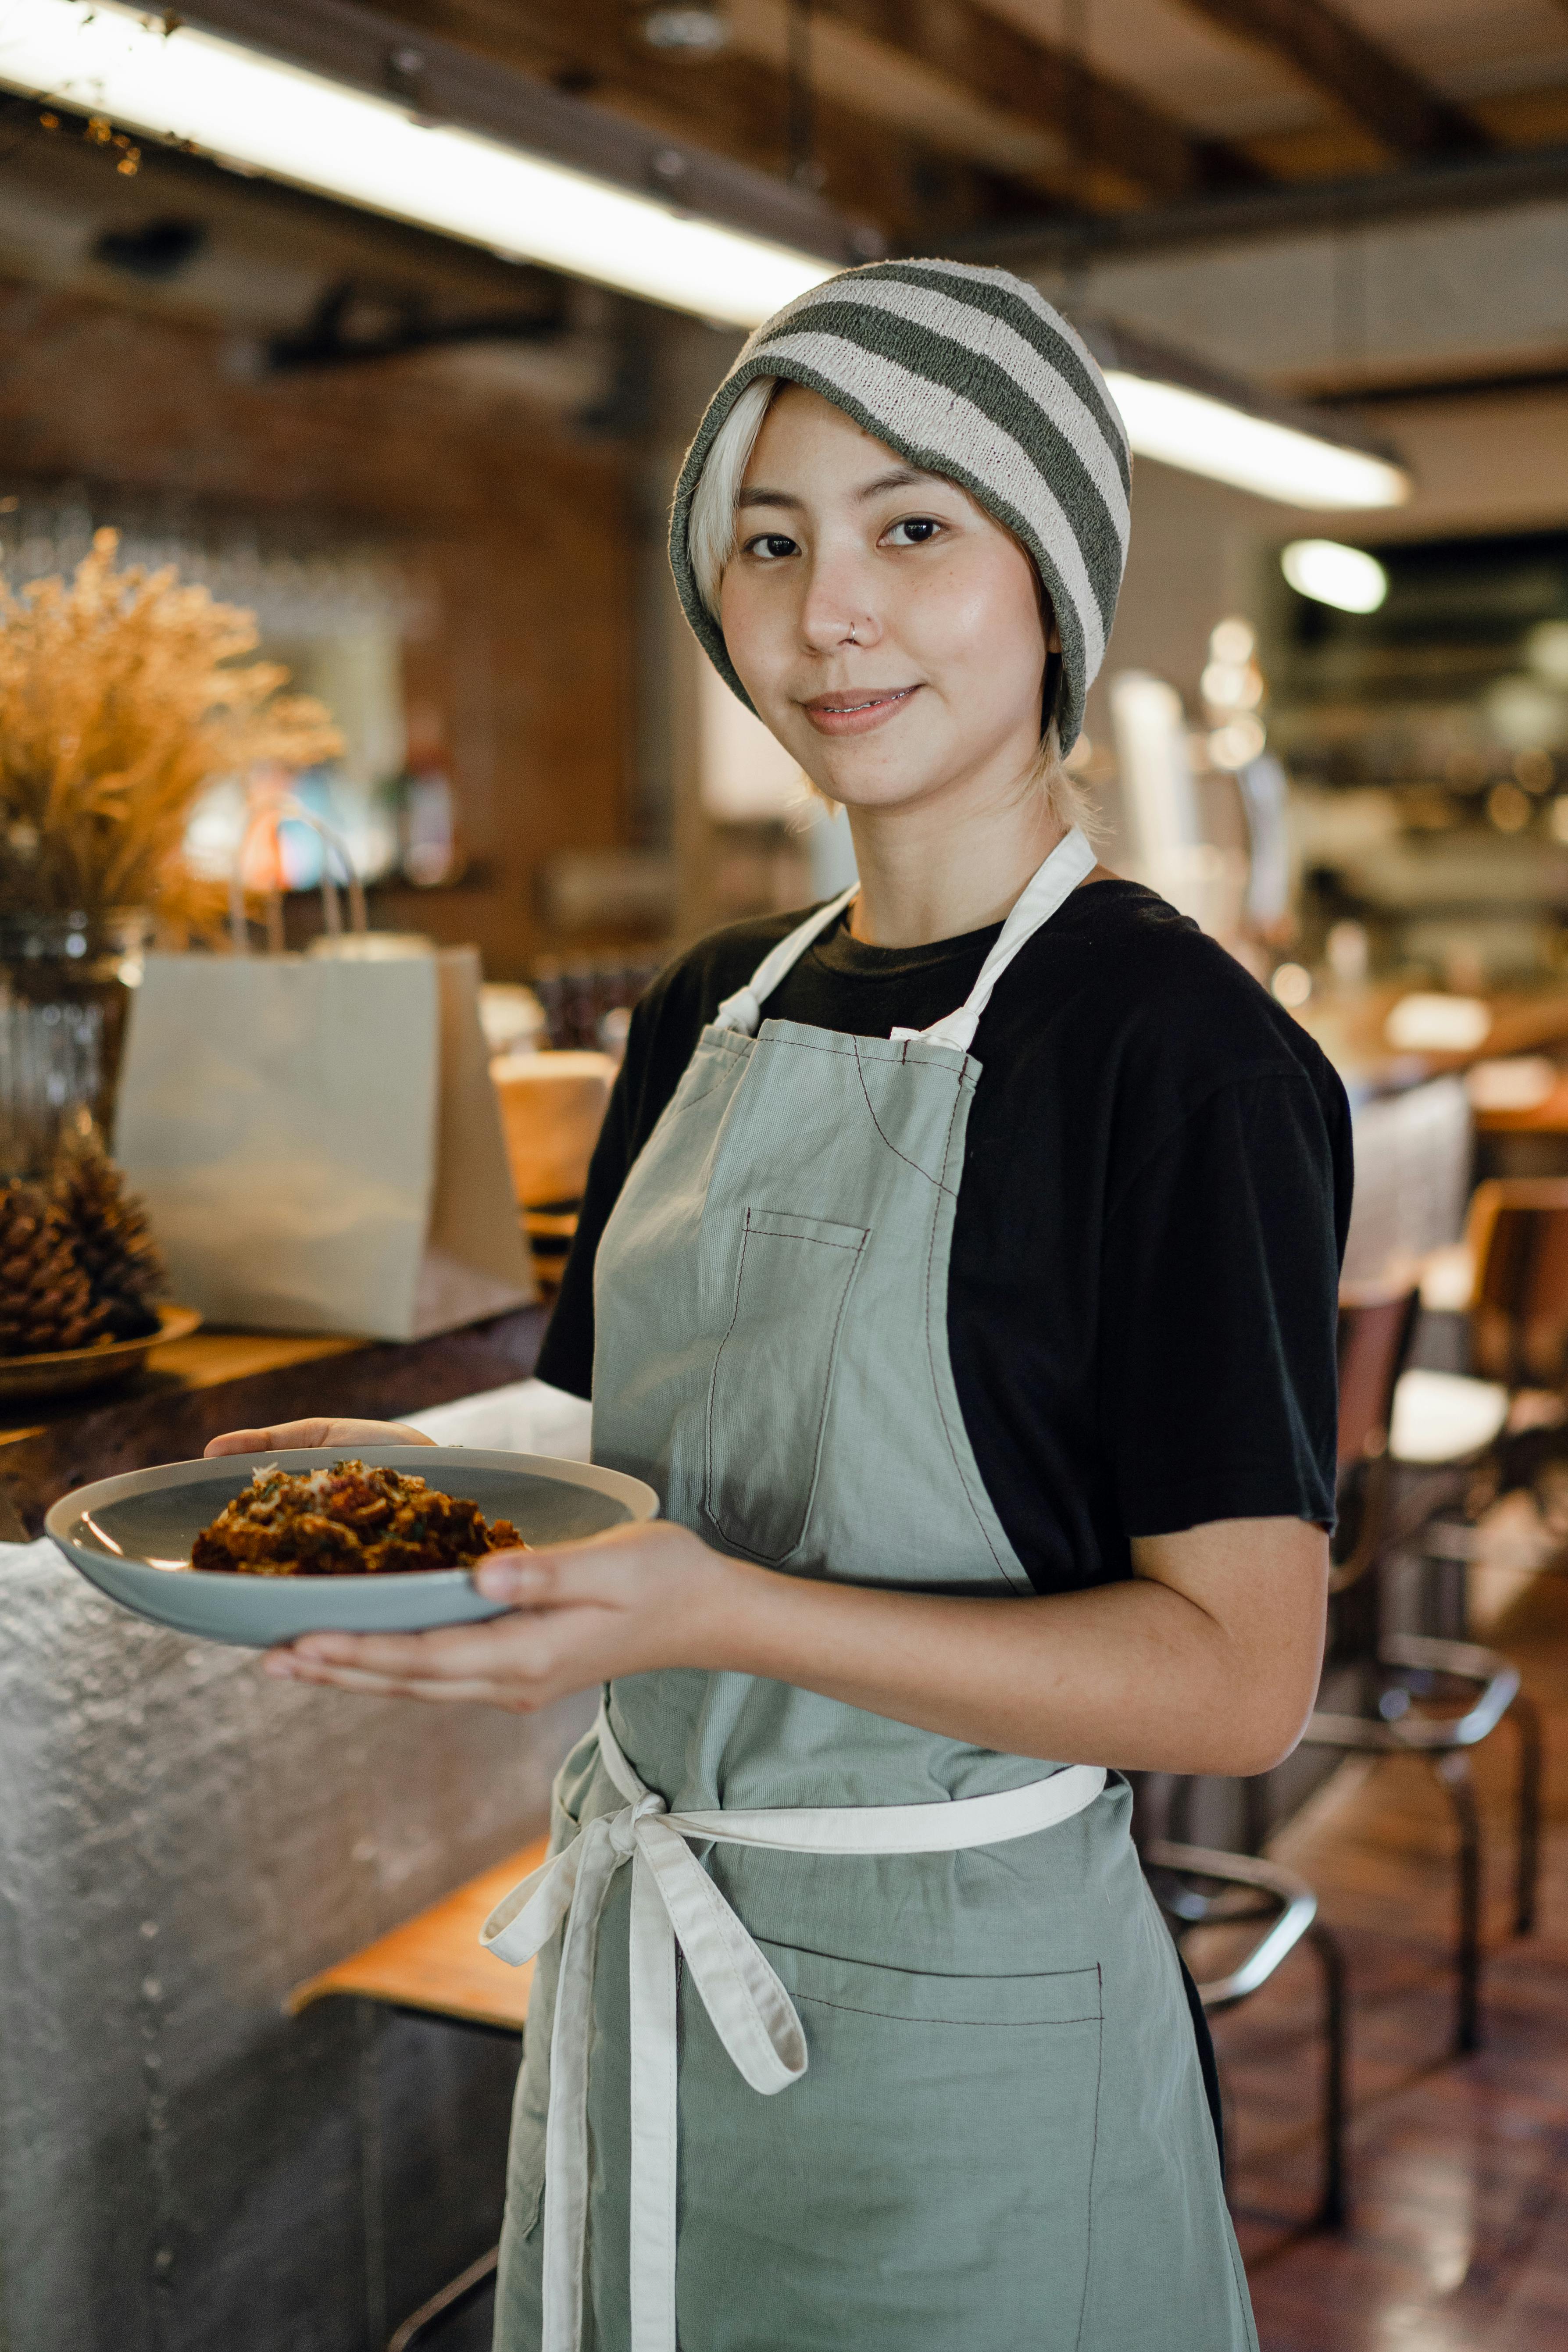 A woman serving food in a café | Source: Pexels